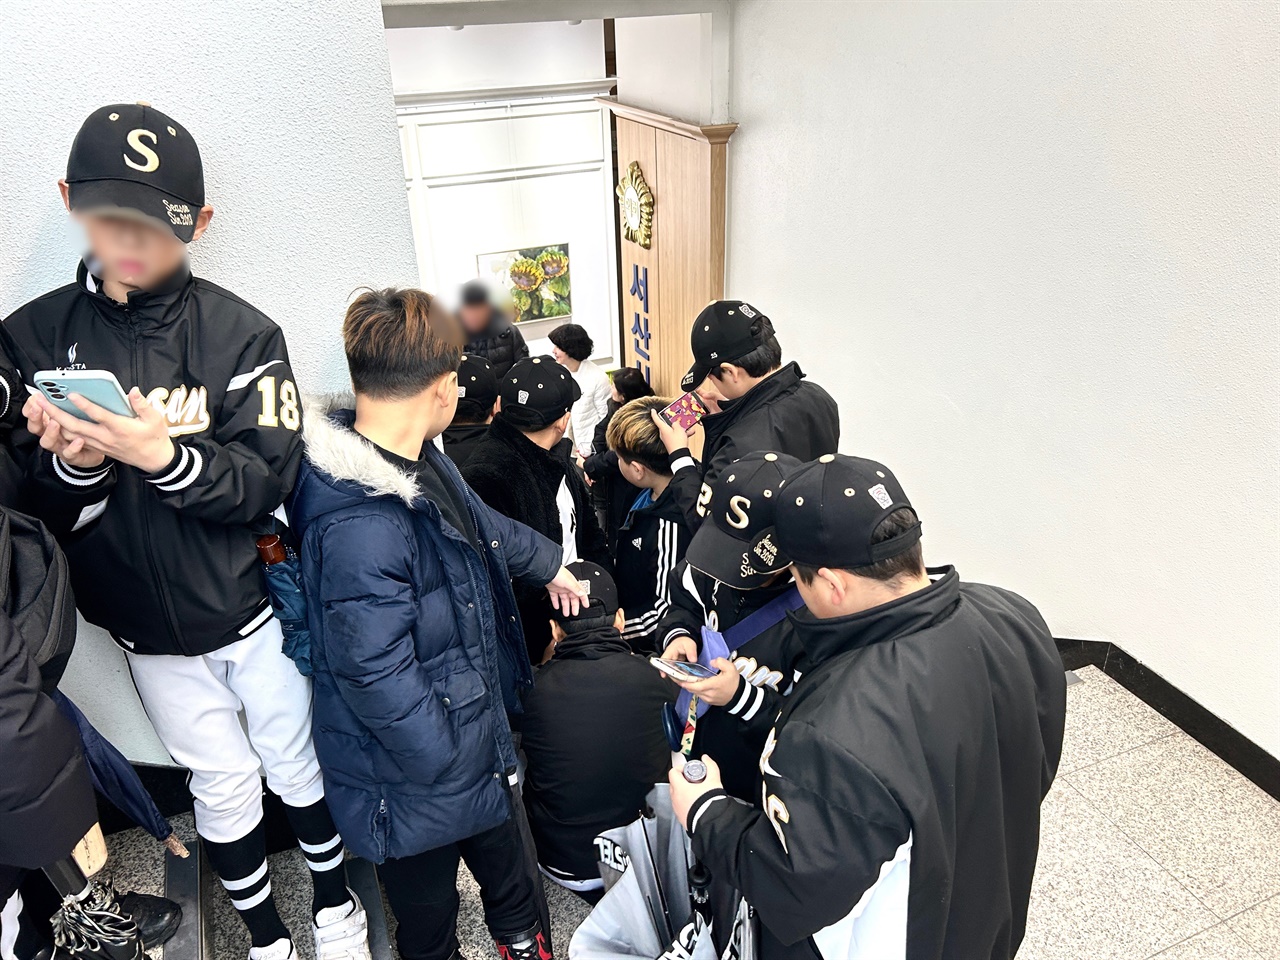 오지환 선수의 서산 방문 소식이 전해지자, 팬 사인회 한 시간 전부터 팬들이 몰려들면서, 서산시의회로 이어지는 3층 계단까지 들어찼다.